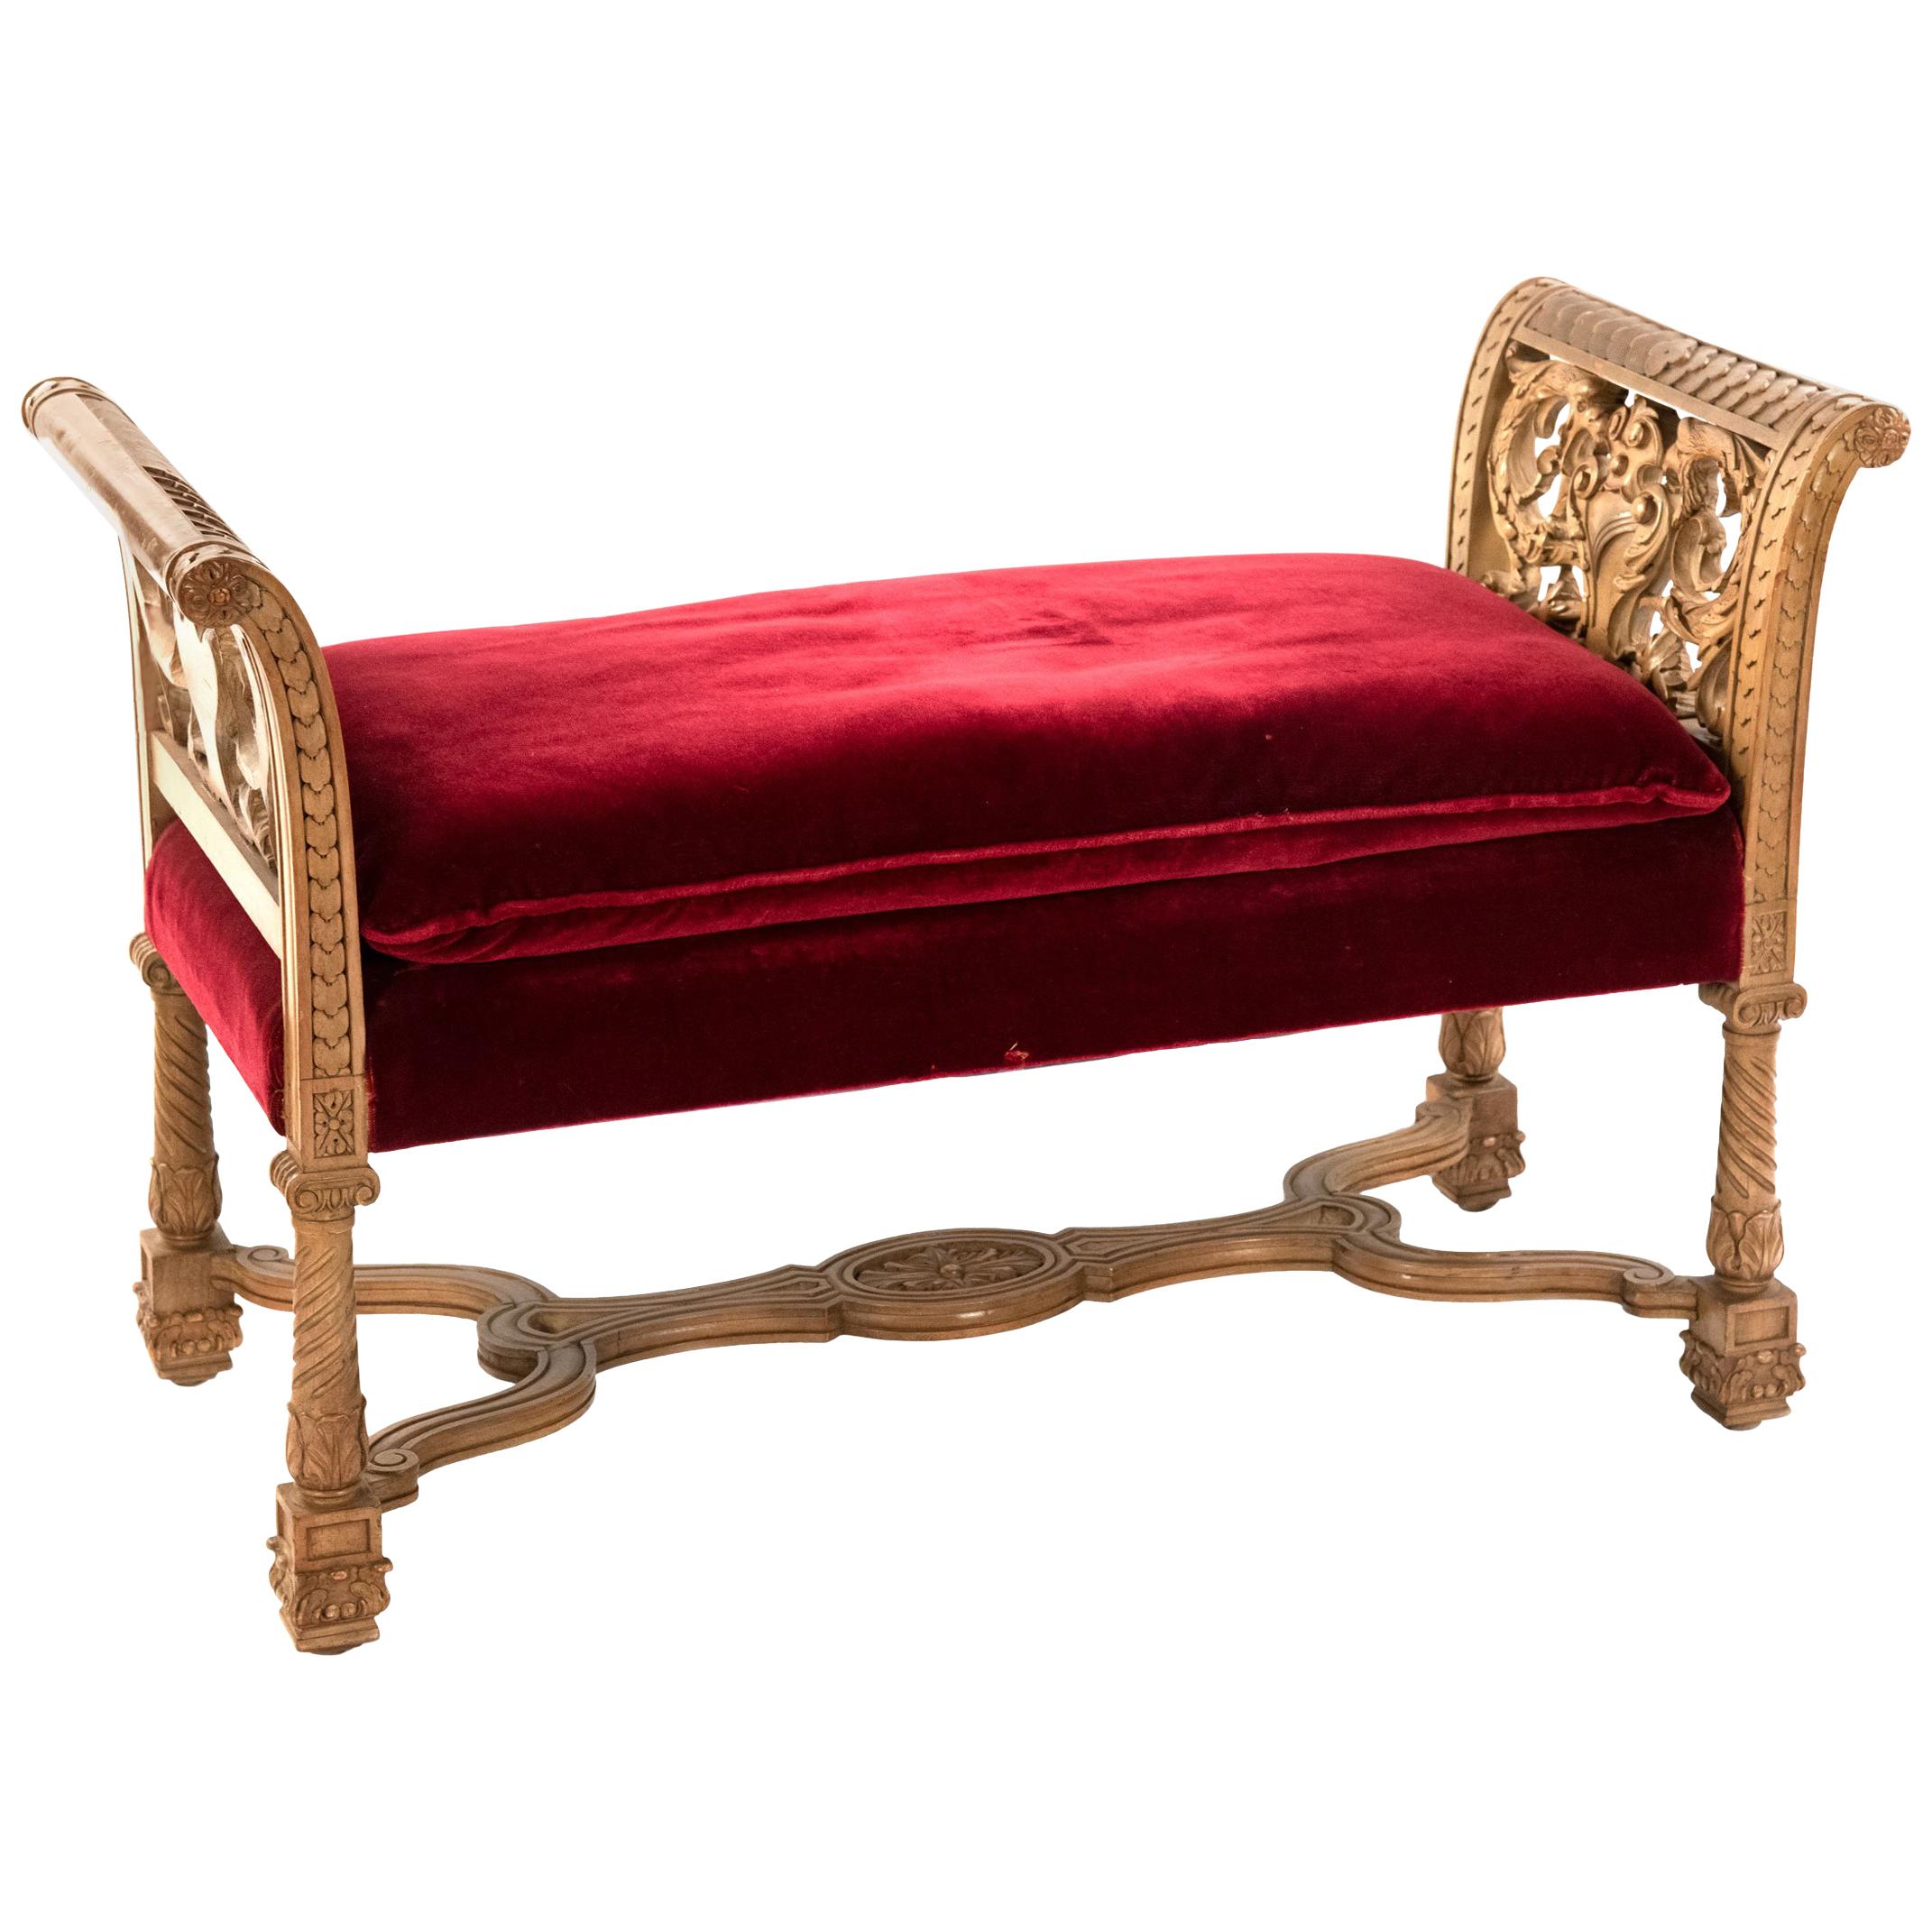 Carved Italian White Oak Renaissance Revival Bench with Red Velvet Cushion